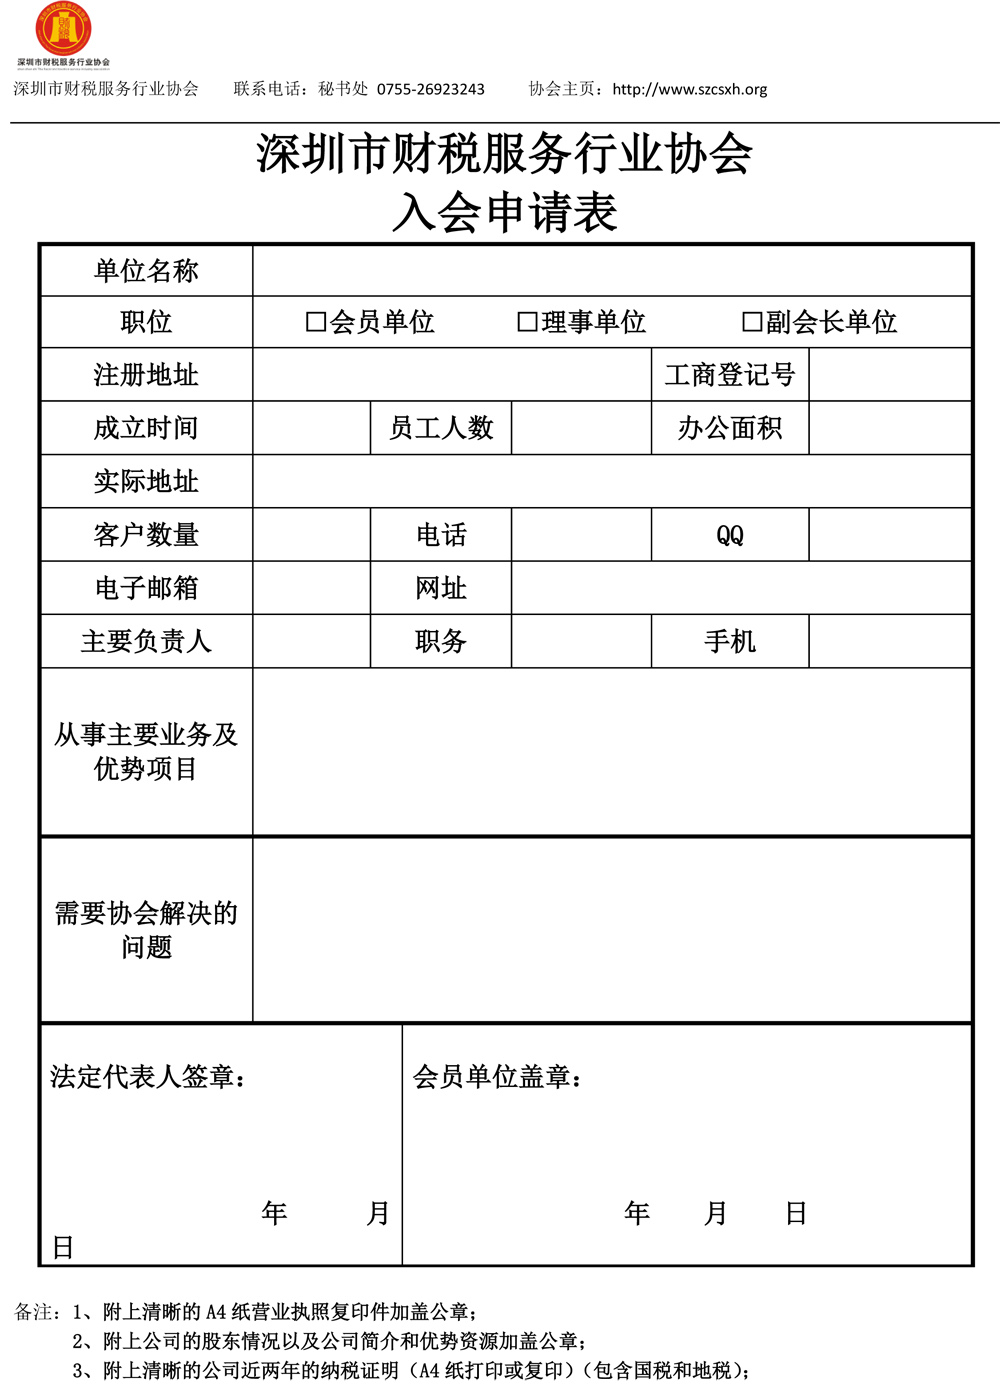 深圳市财税服务行业协会入会须知 最新-2.jpg